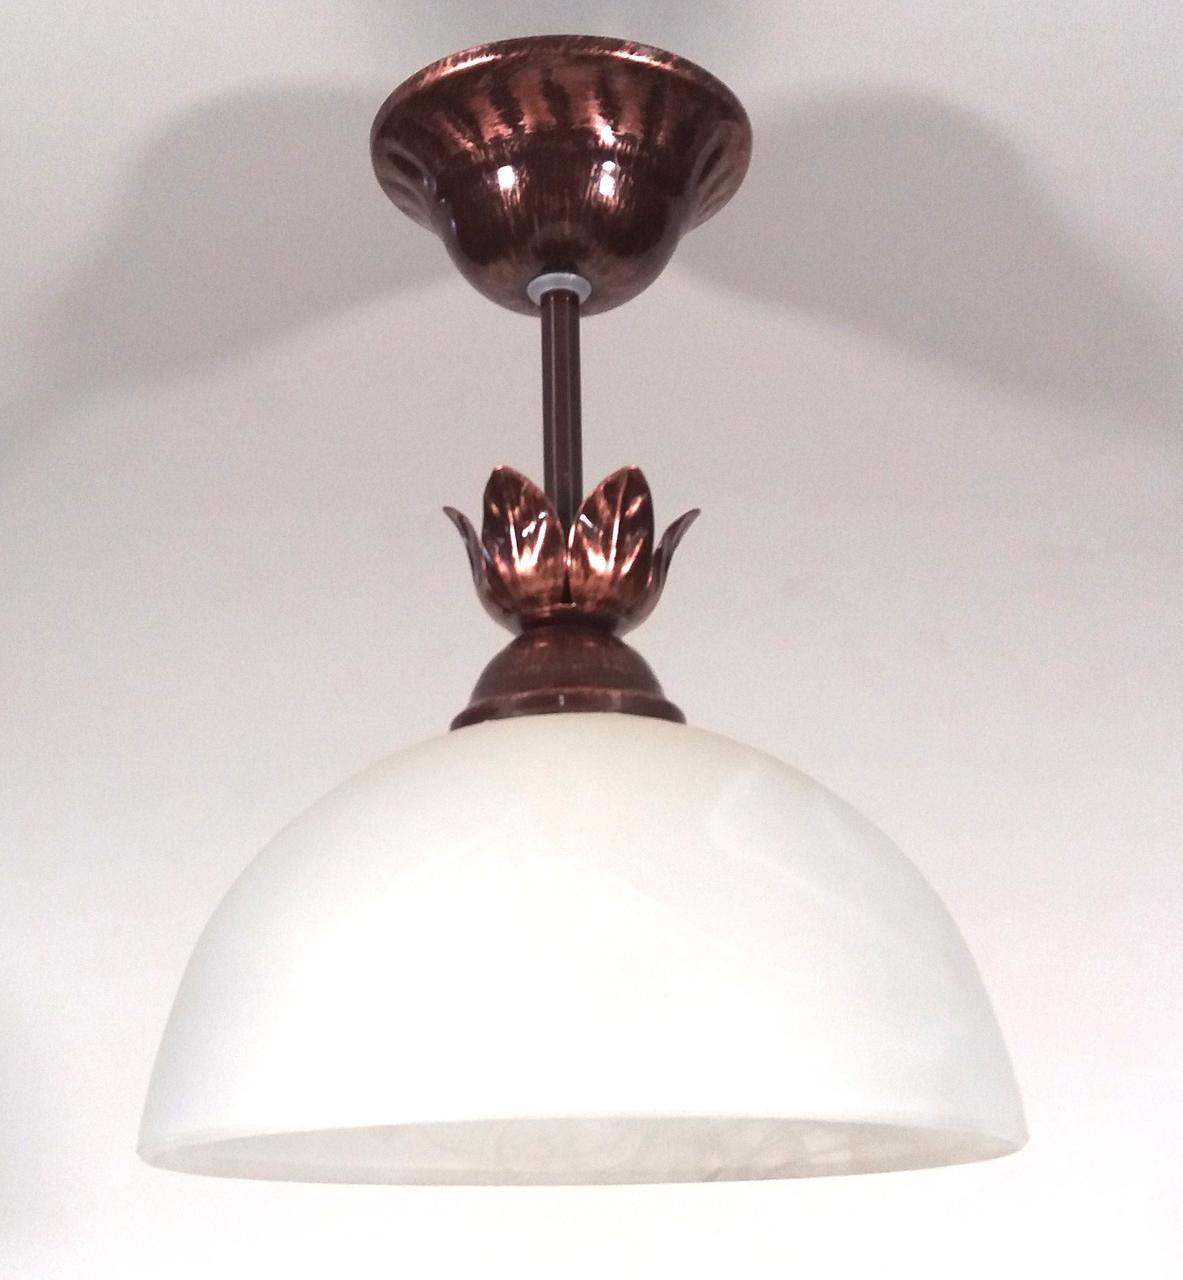 

Люстра потолочная на одну лампочку коричневая металлическая в стиле флористика Підвіс міні, Коричневый